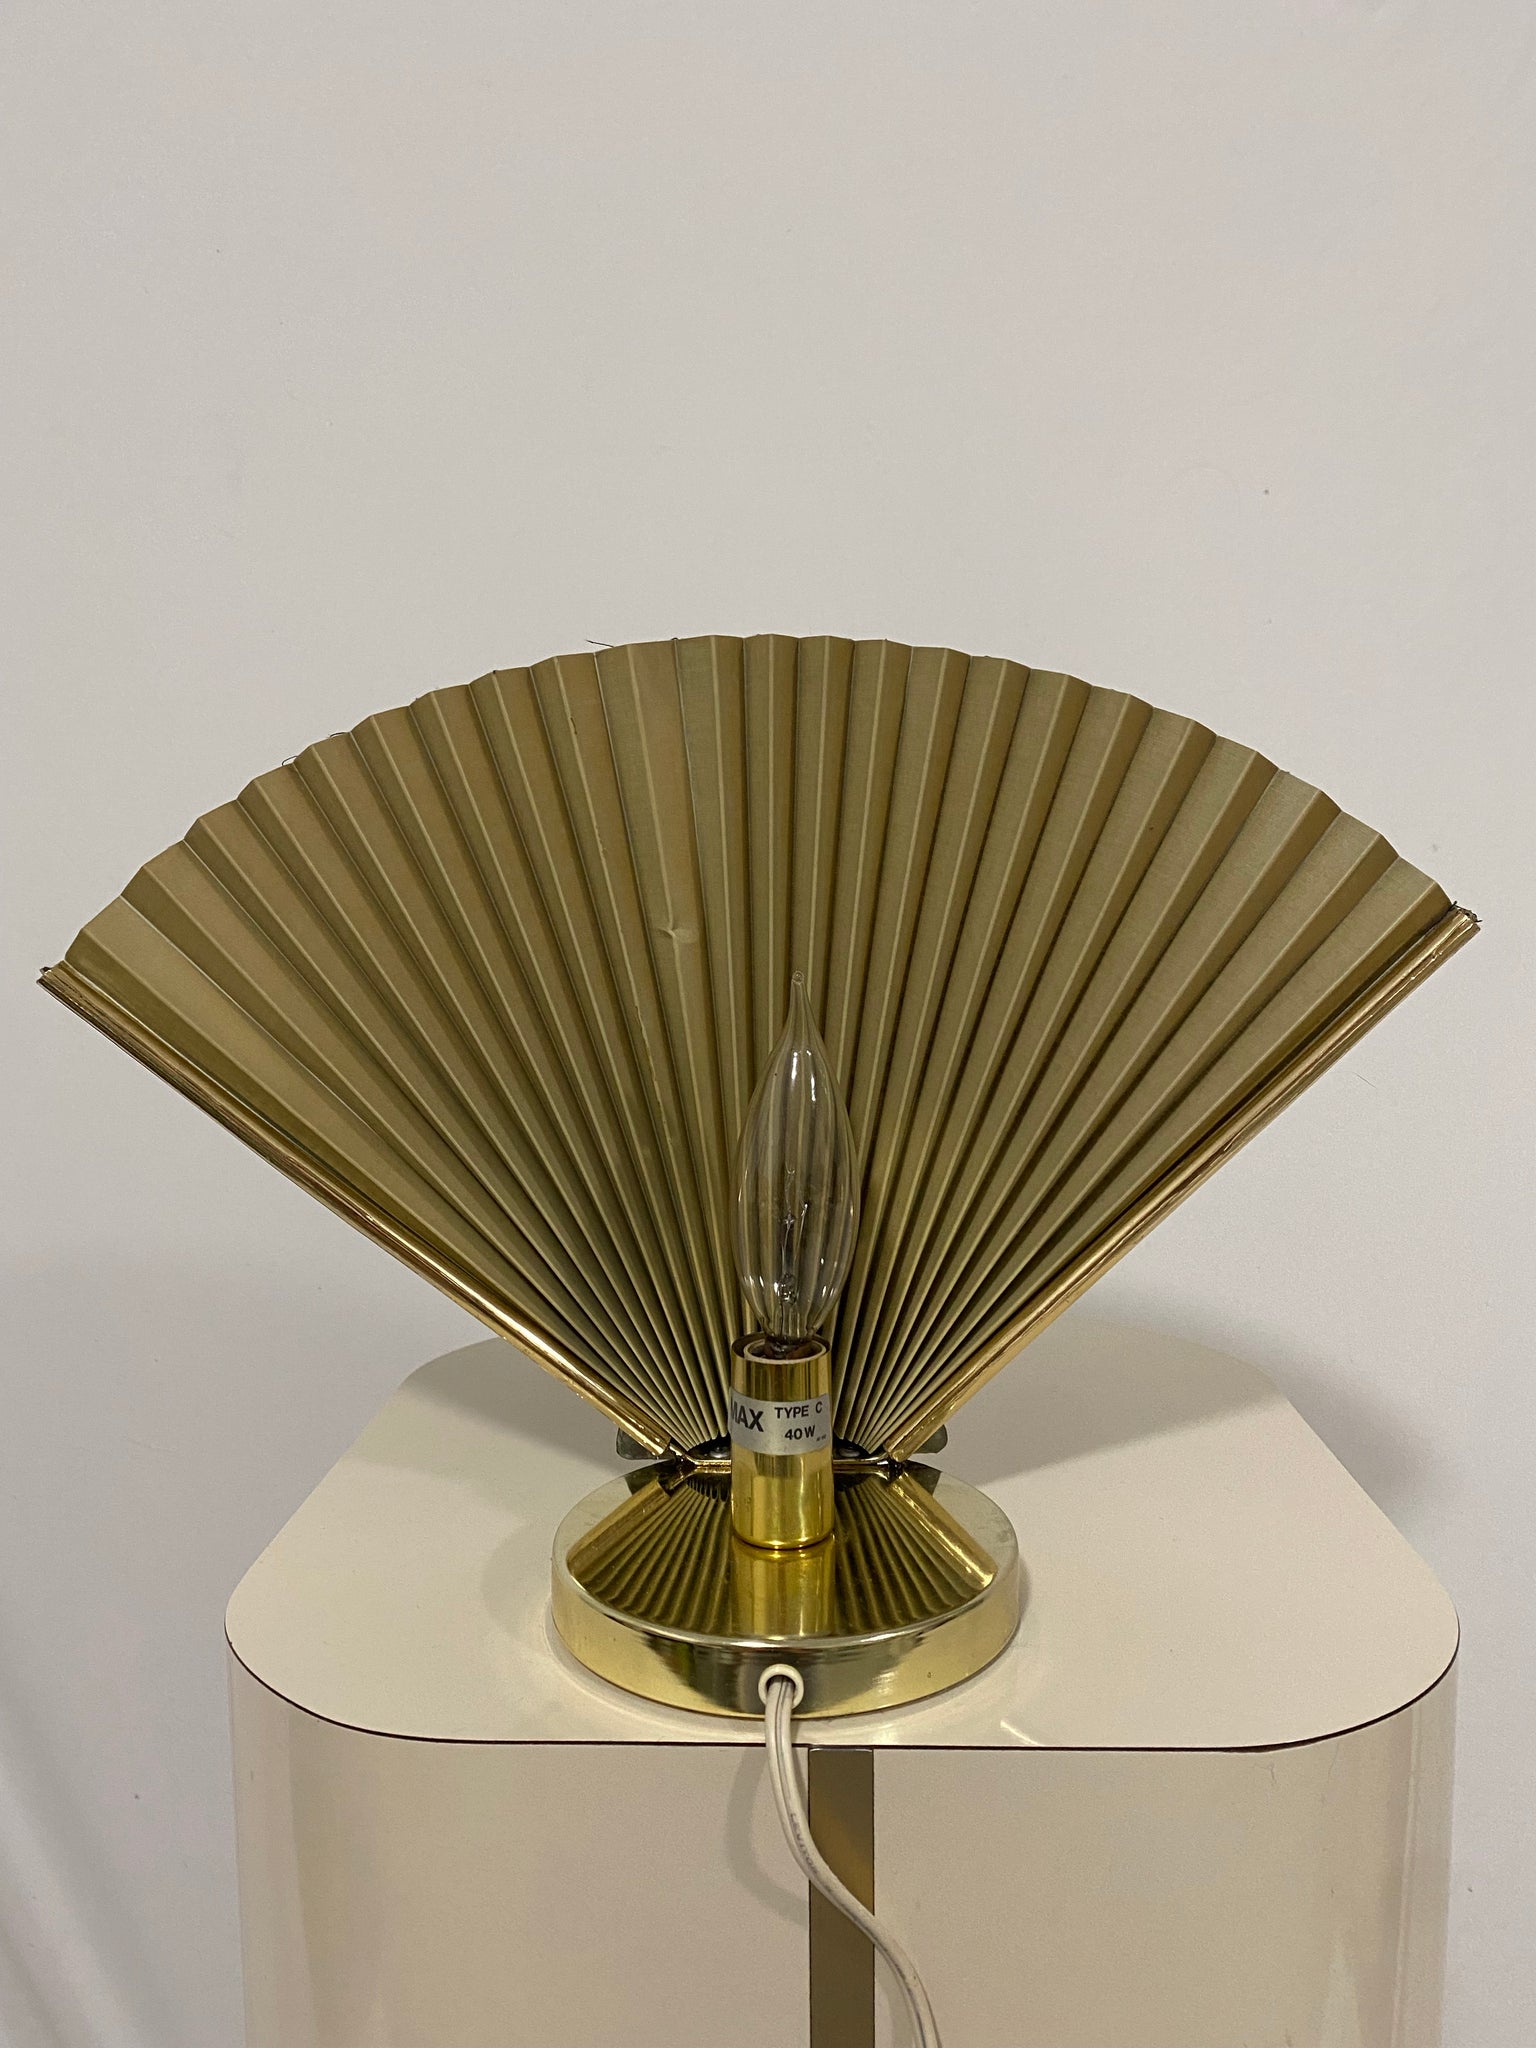 Mcm brass seashell fan lamps